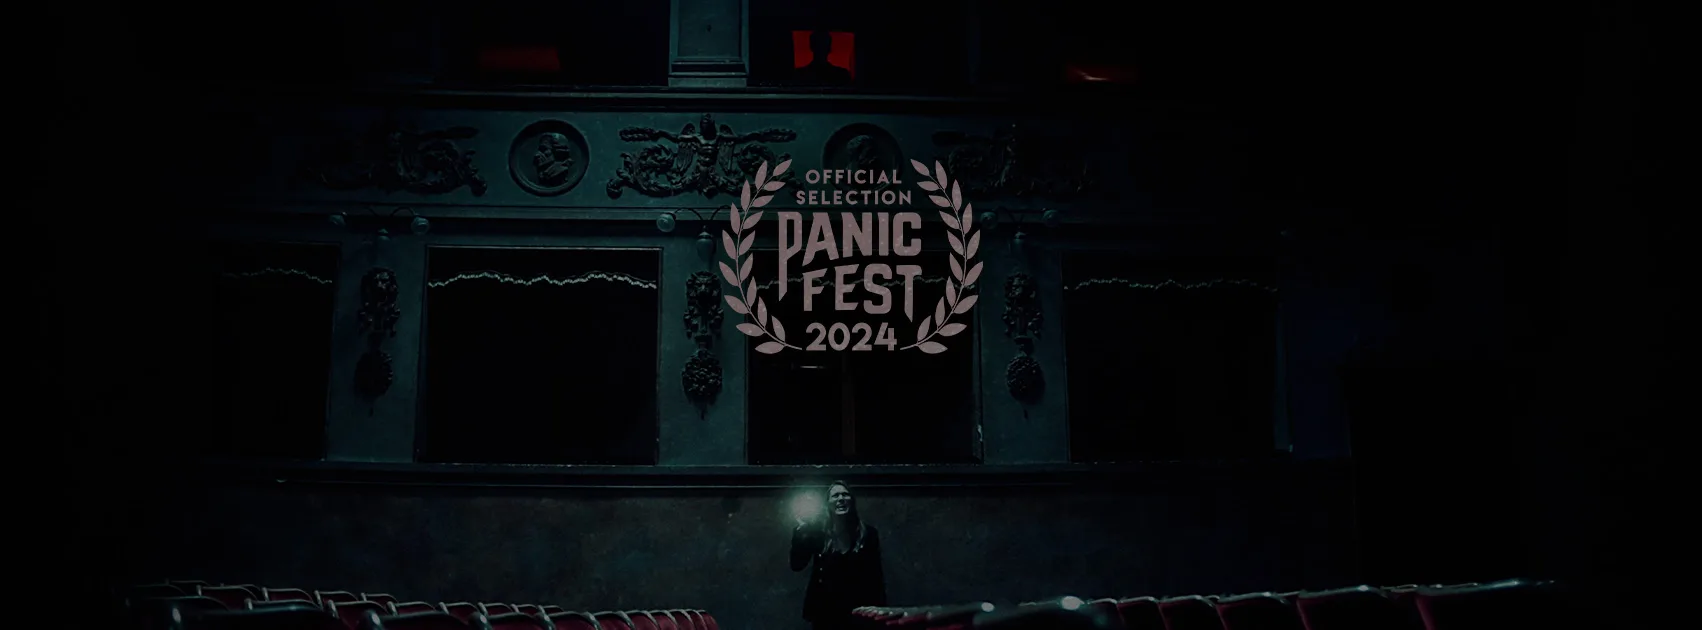 Il cortometraggio "STAY" nella selezione ufficiale del Panic Fest